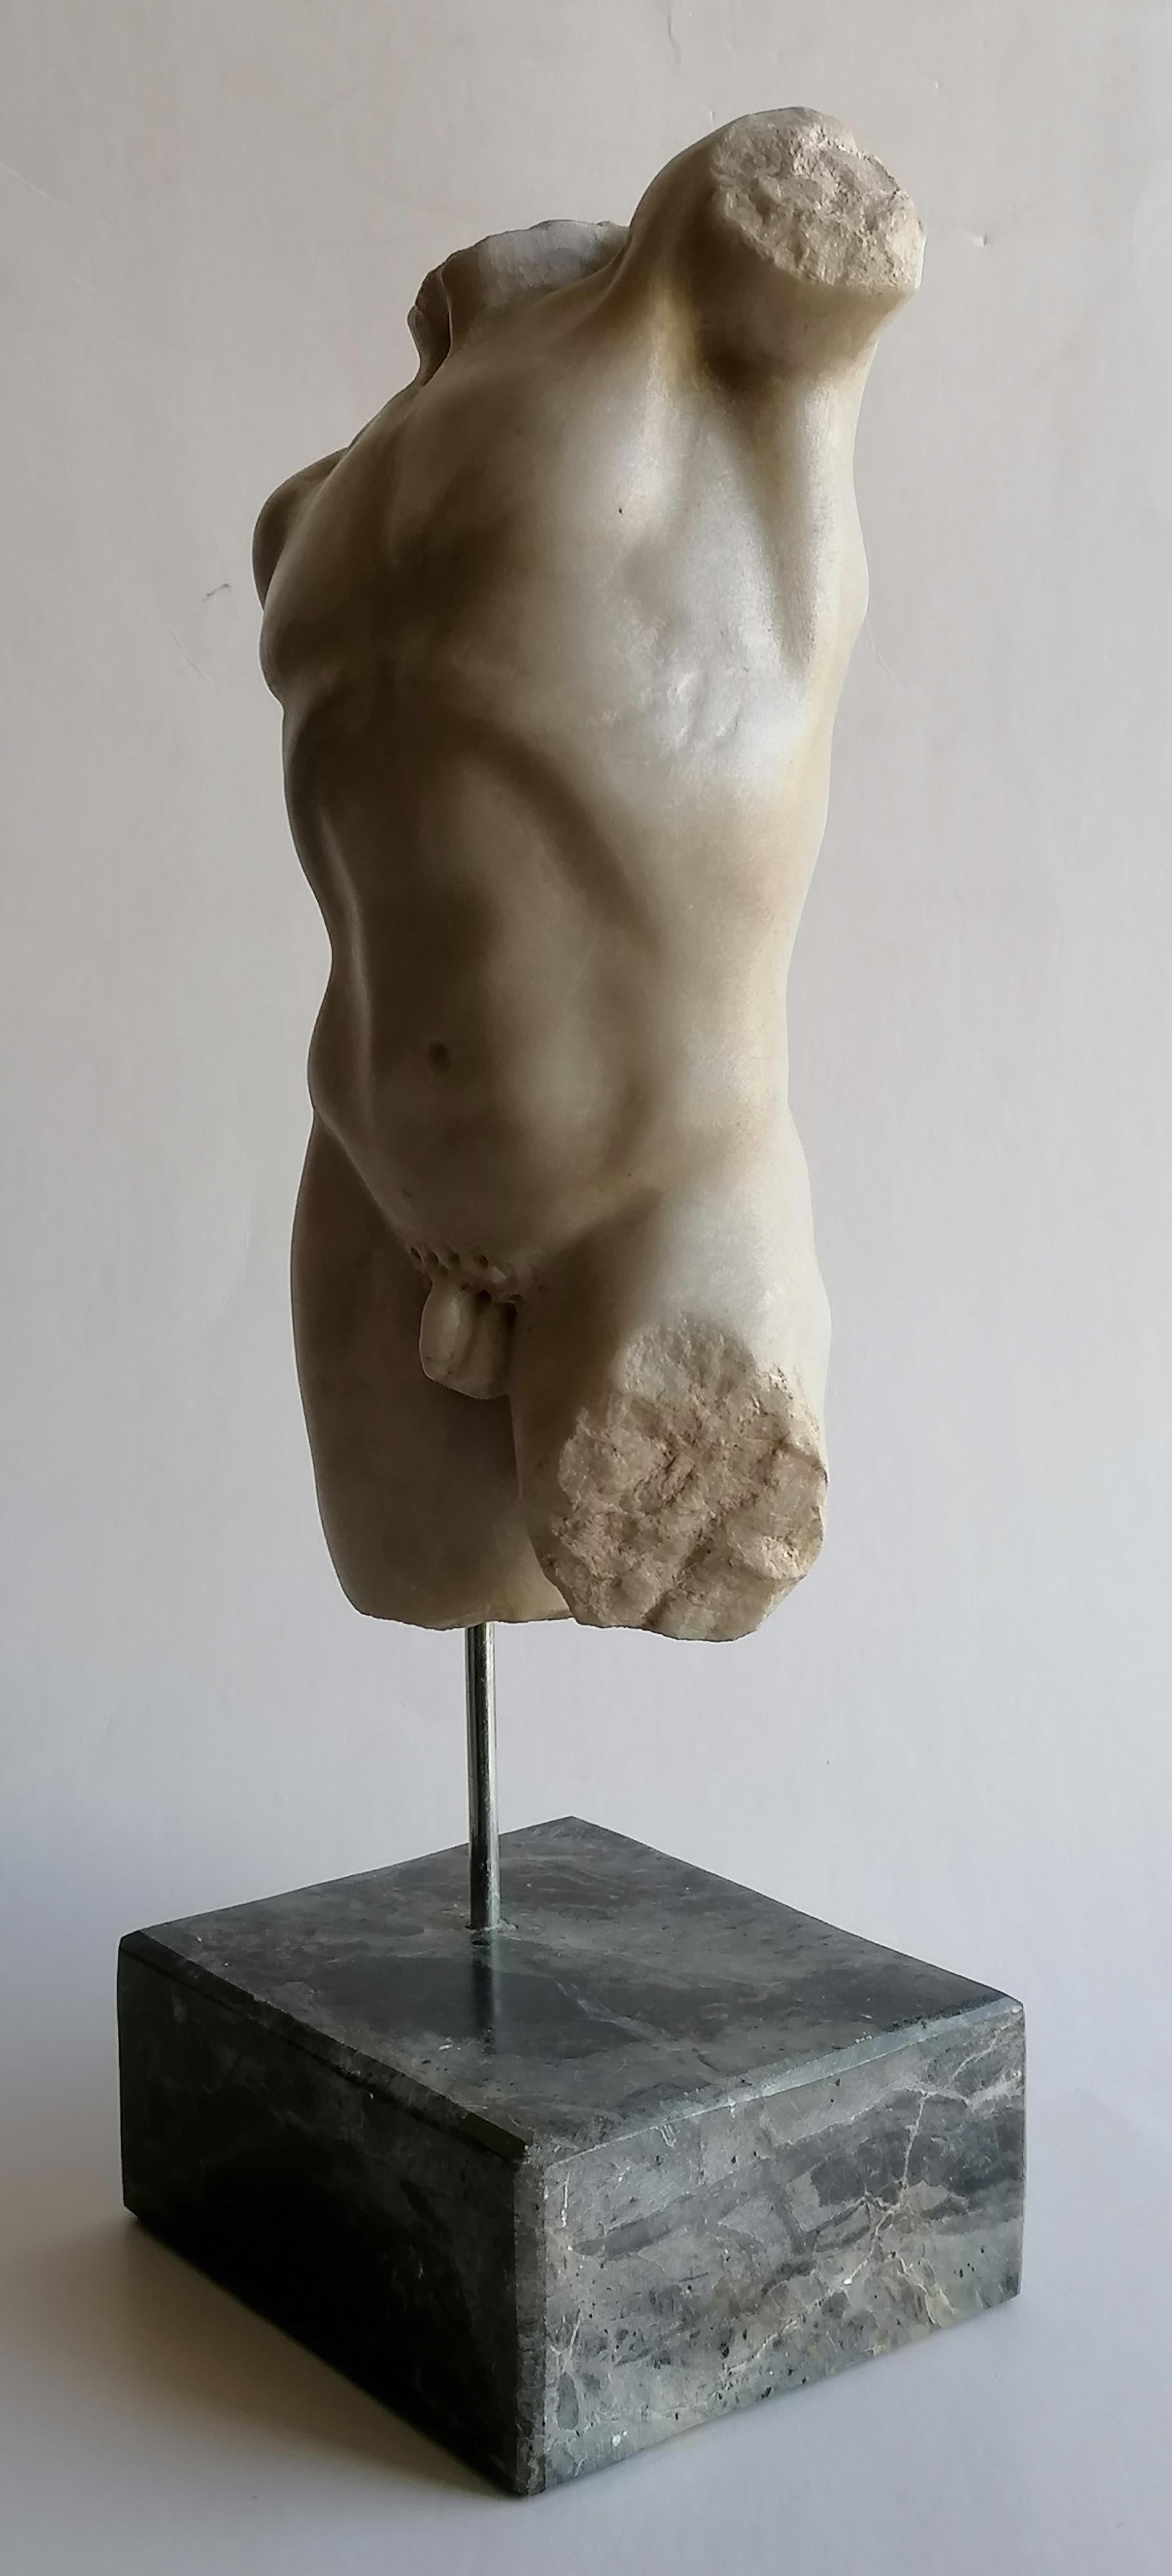 Hand-Crafted Torso maschile classico scolpito su marmo bianco di Carrara